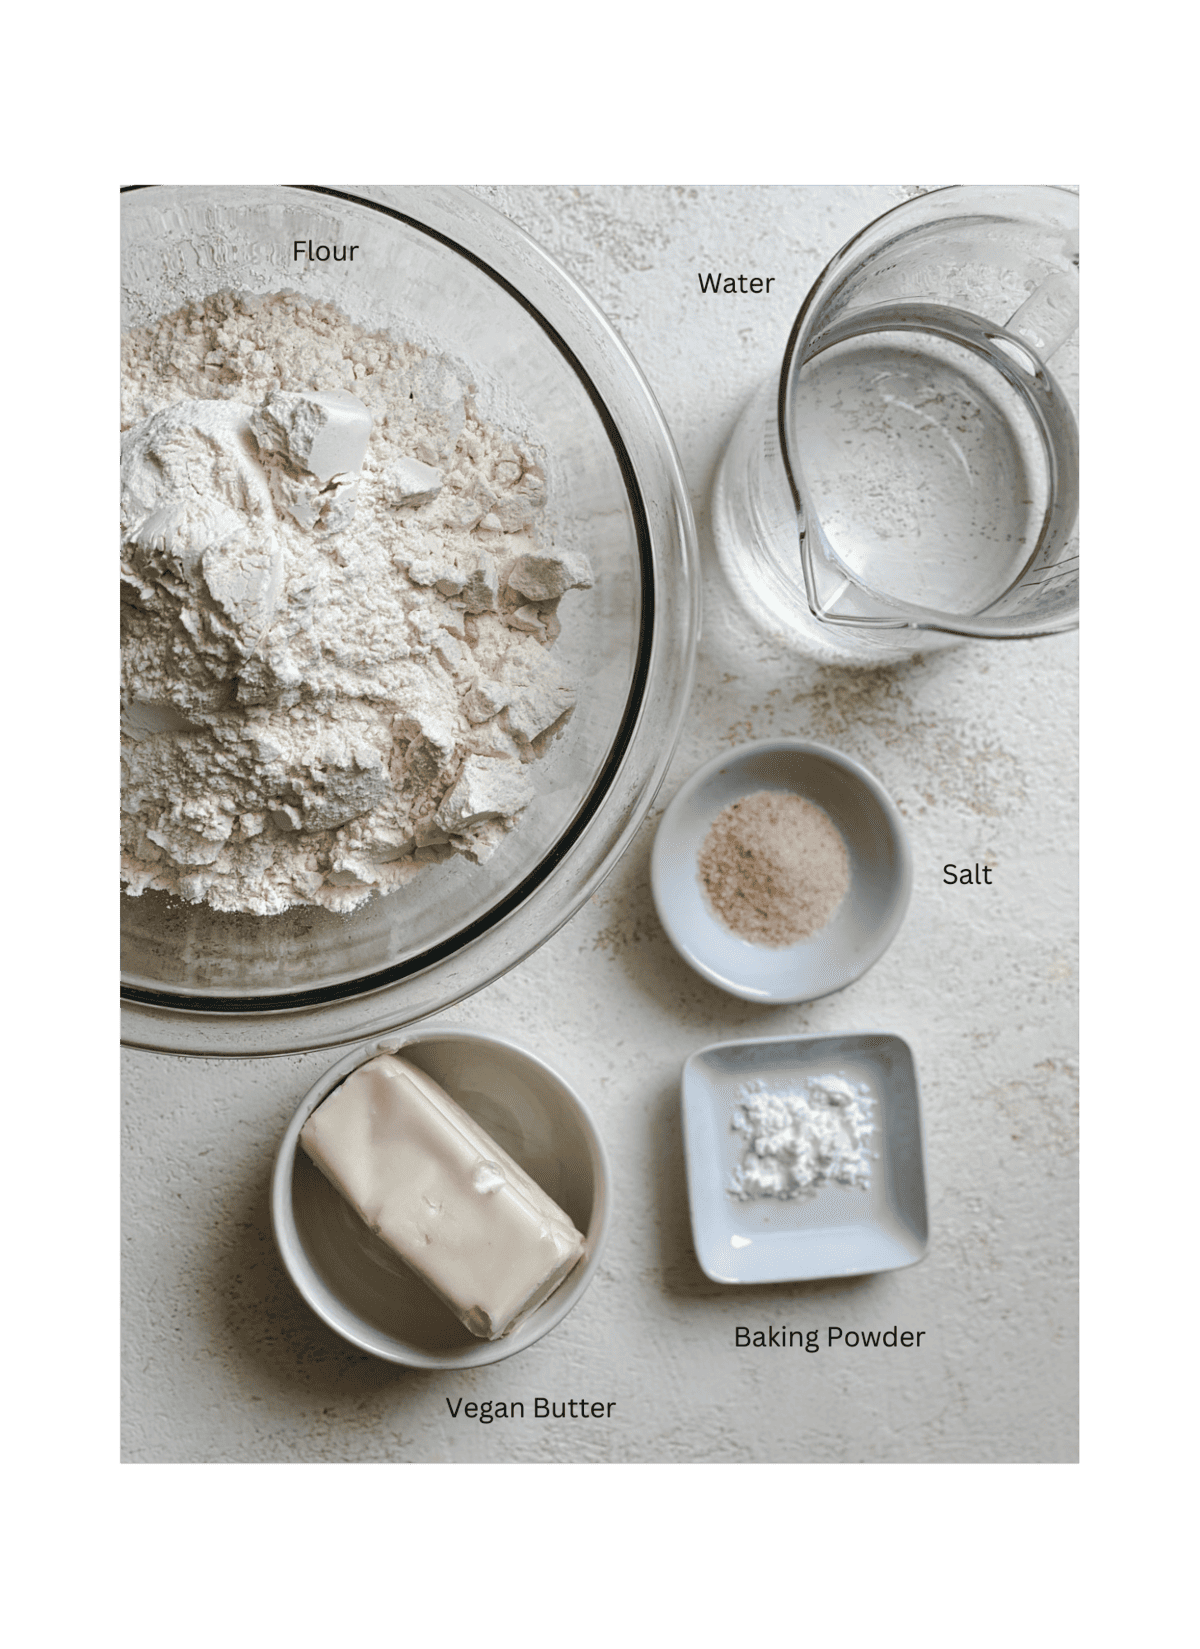 ingredients for Tortillas de Harina – Handmade Flour Tortillas a،nst a whtie surface